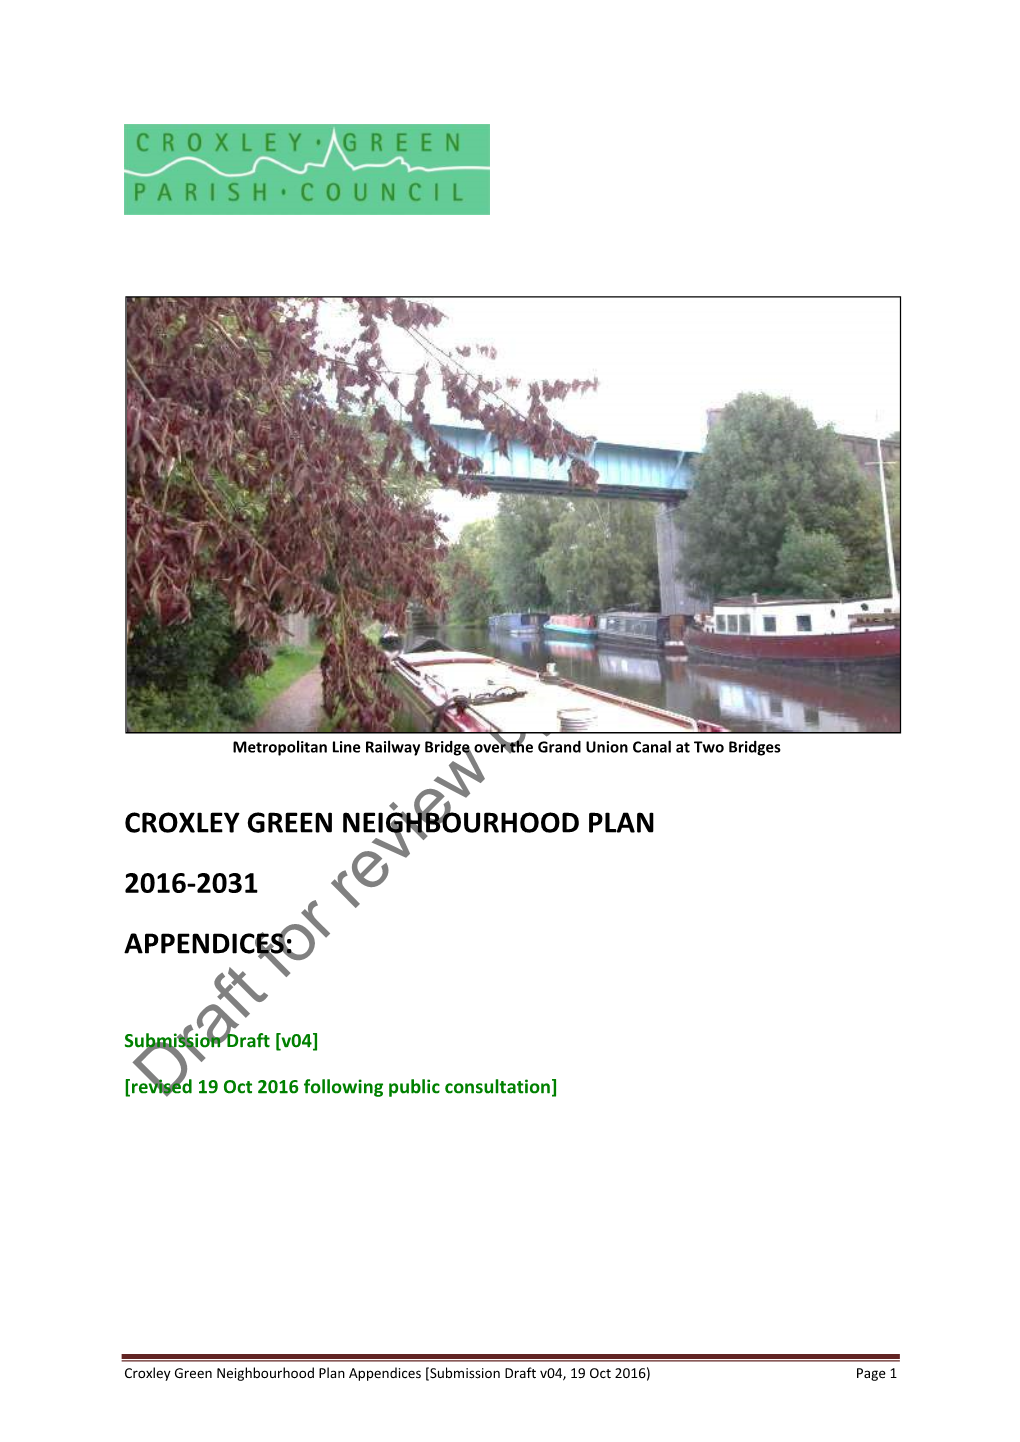 Croxley Green Neighbourhood Plan 2016-2031 Appendices